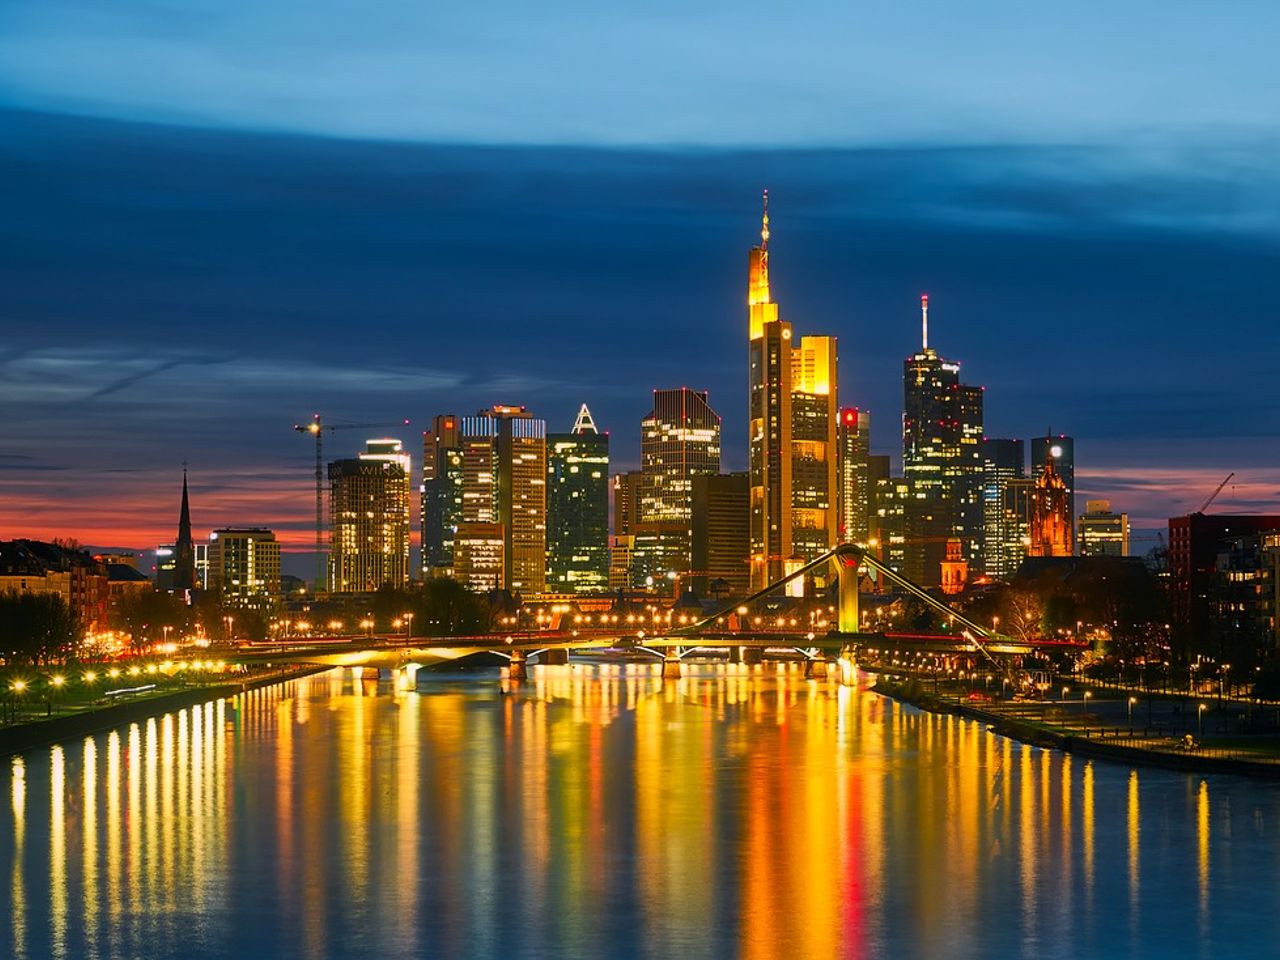 ACHAT Städteerlebnis Frankfurt-Skyline (1 ÜN)